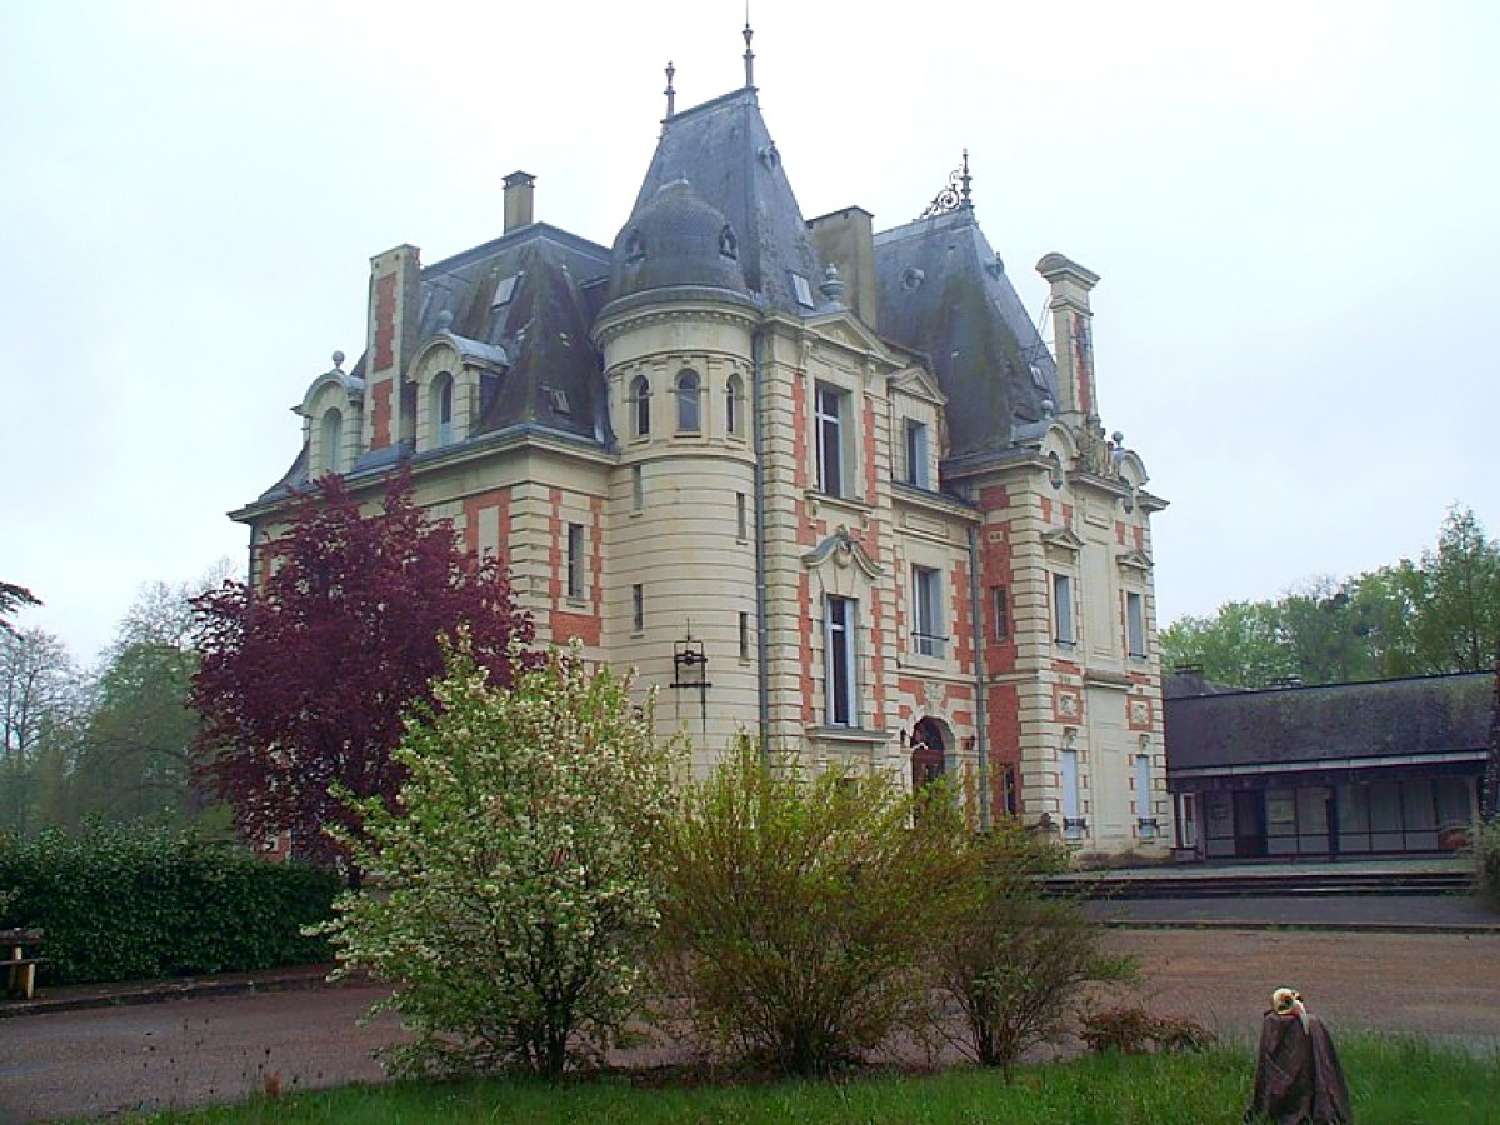  à vendre château Le Mans Sarthe 2